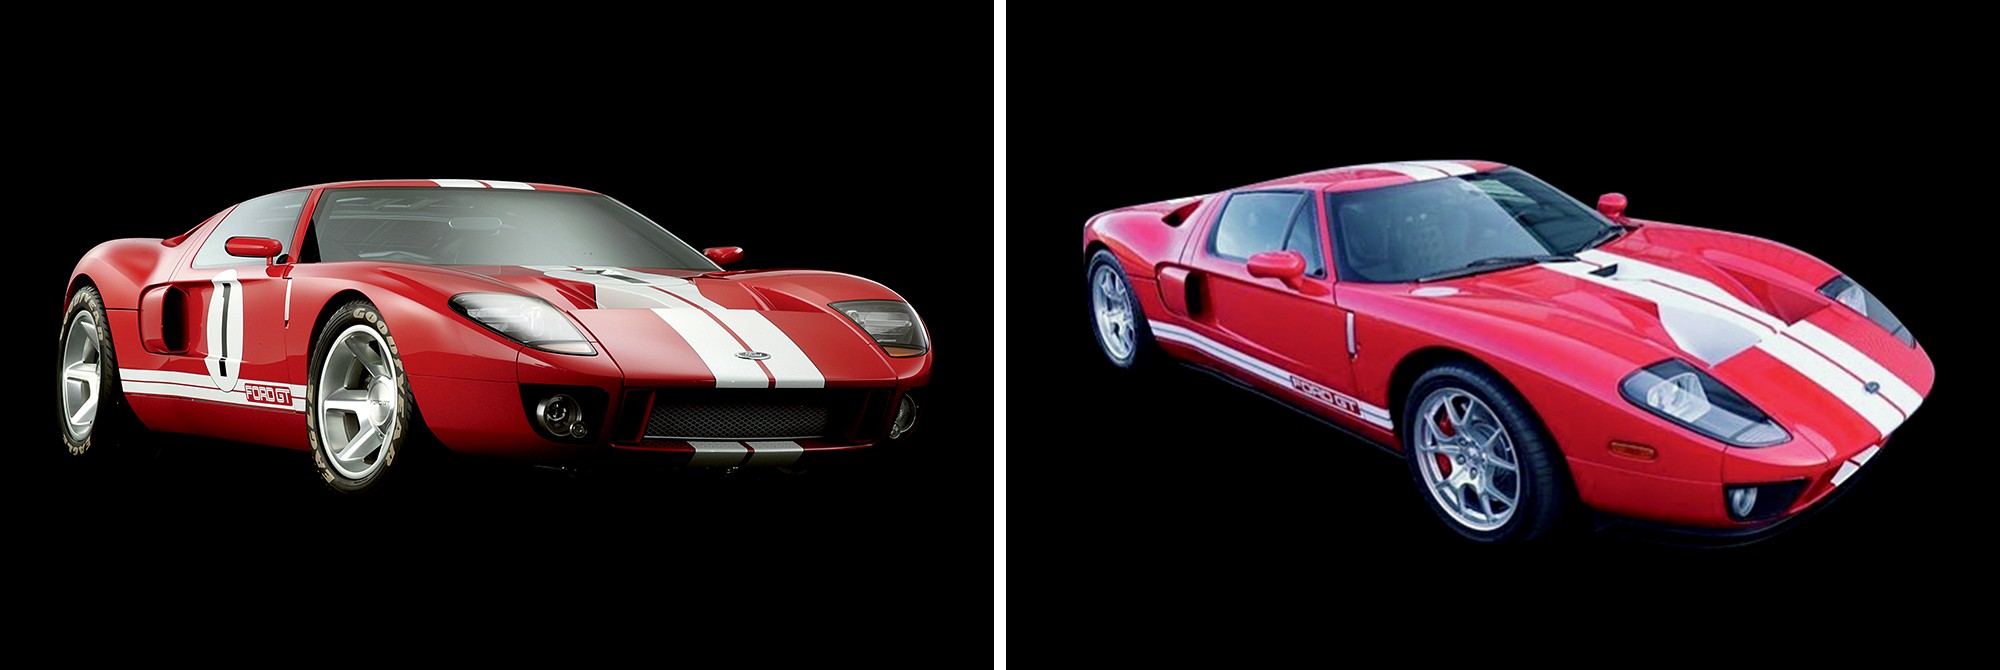 Império do fake: Consegue adivinhar qual o Ford GT40 original e qual o feito pela Autosfibra? A réplica (à dir.) é anunciada no Instagram por R$ 150 mil em postagem que troca o nome da Ford por “protótipo” (Foto: divulgação)